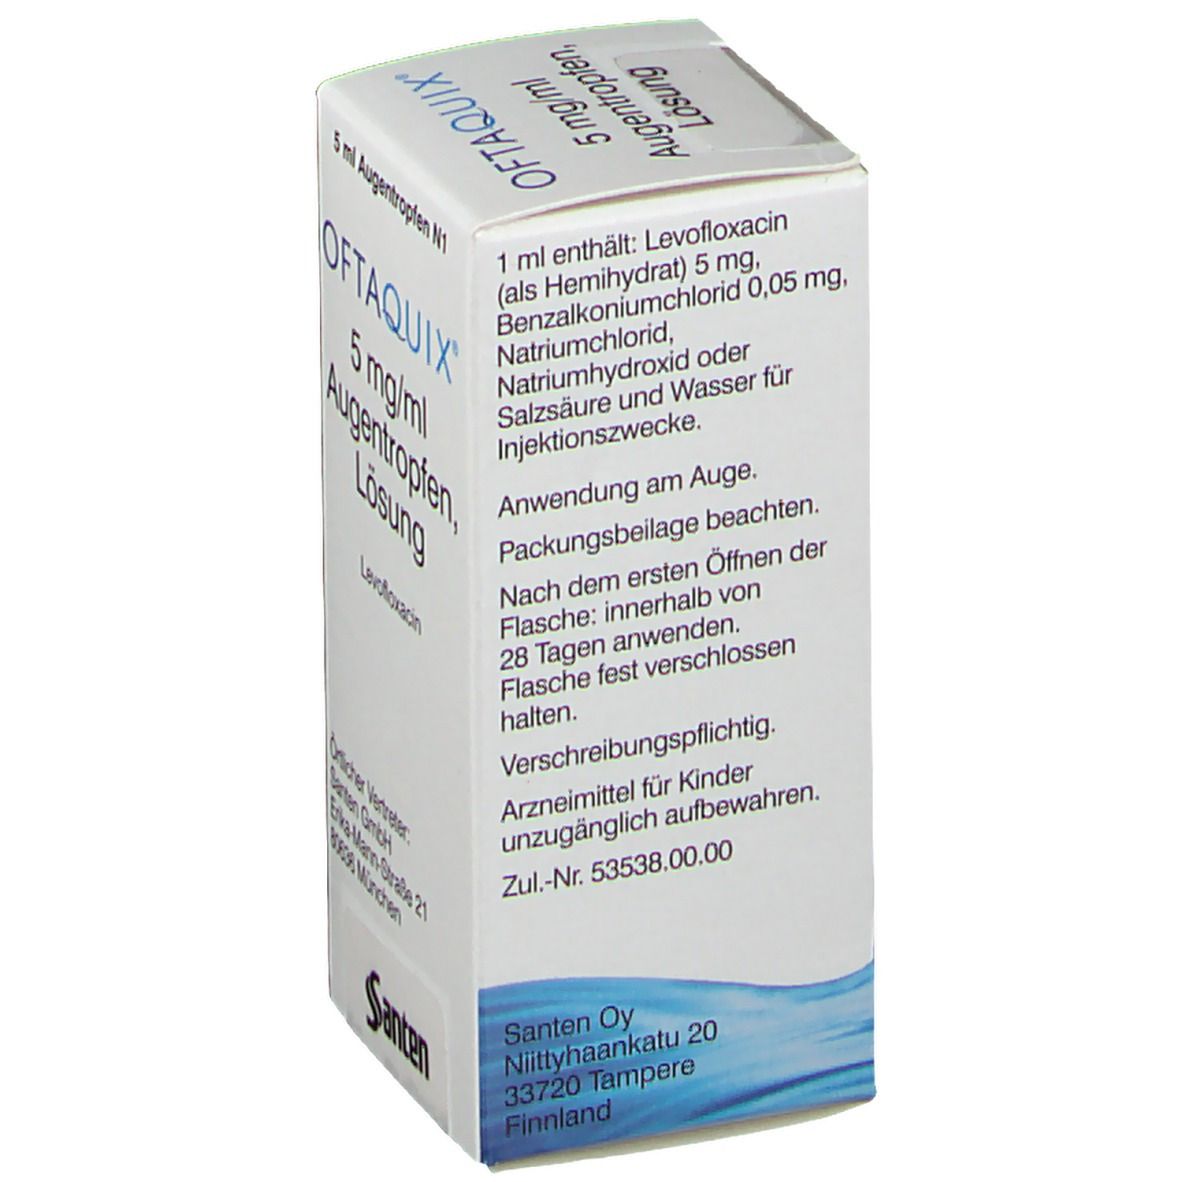 OFTQUIX® 5 mg/ml